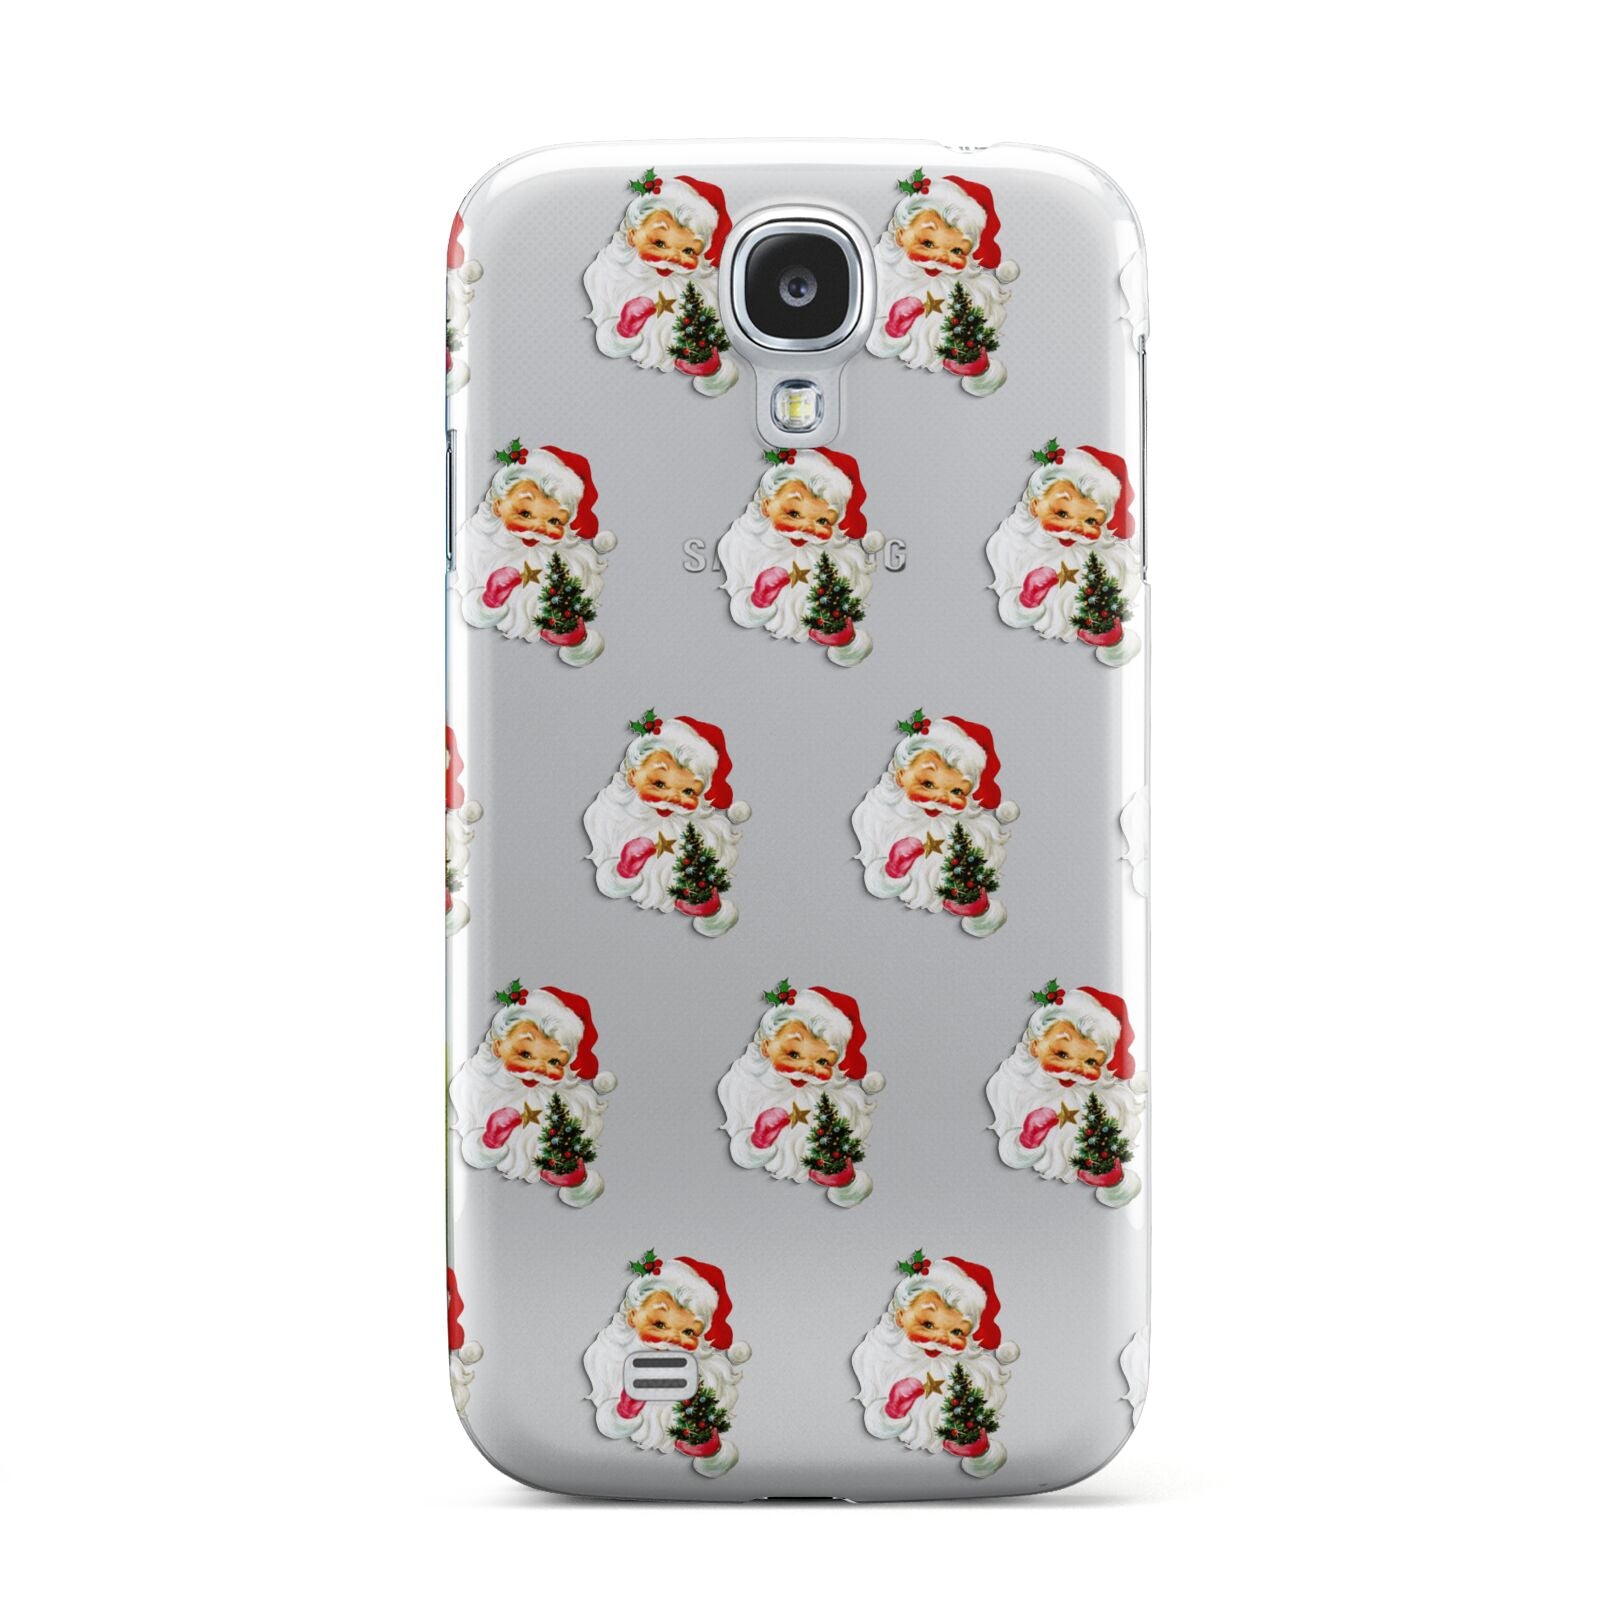 Retro Santa Face Samsung Galaxy S4 Case